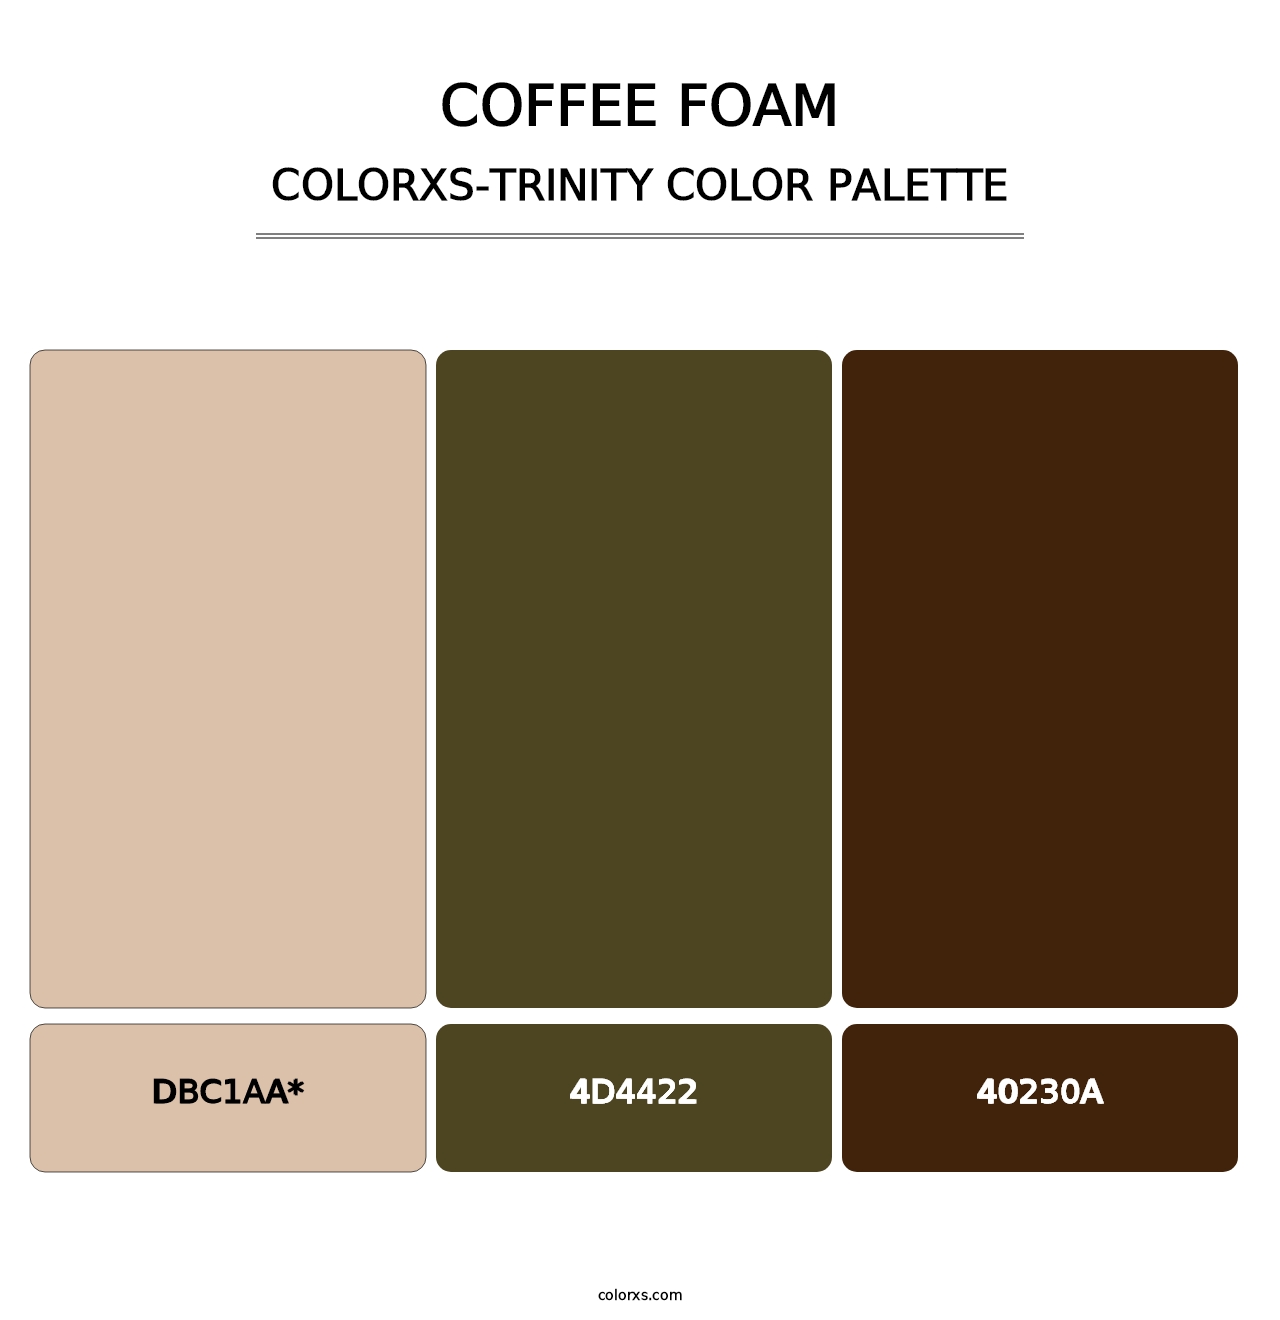 Coffee Foam - Colorxs Trinity Palette